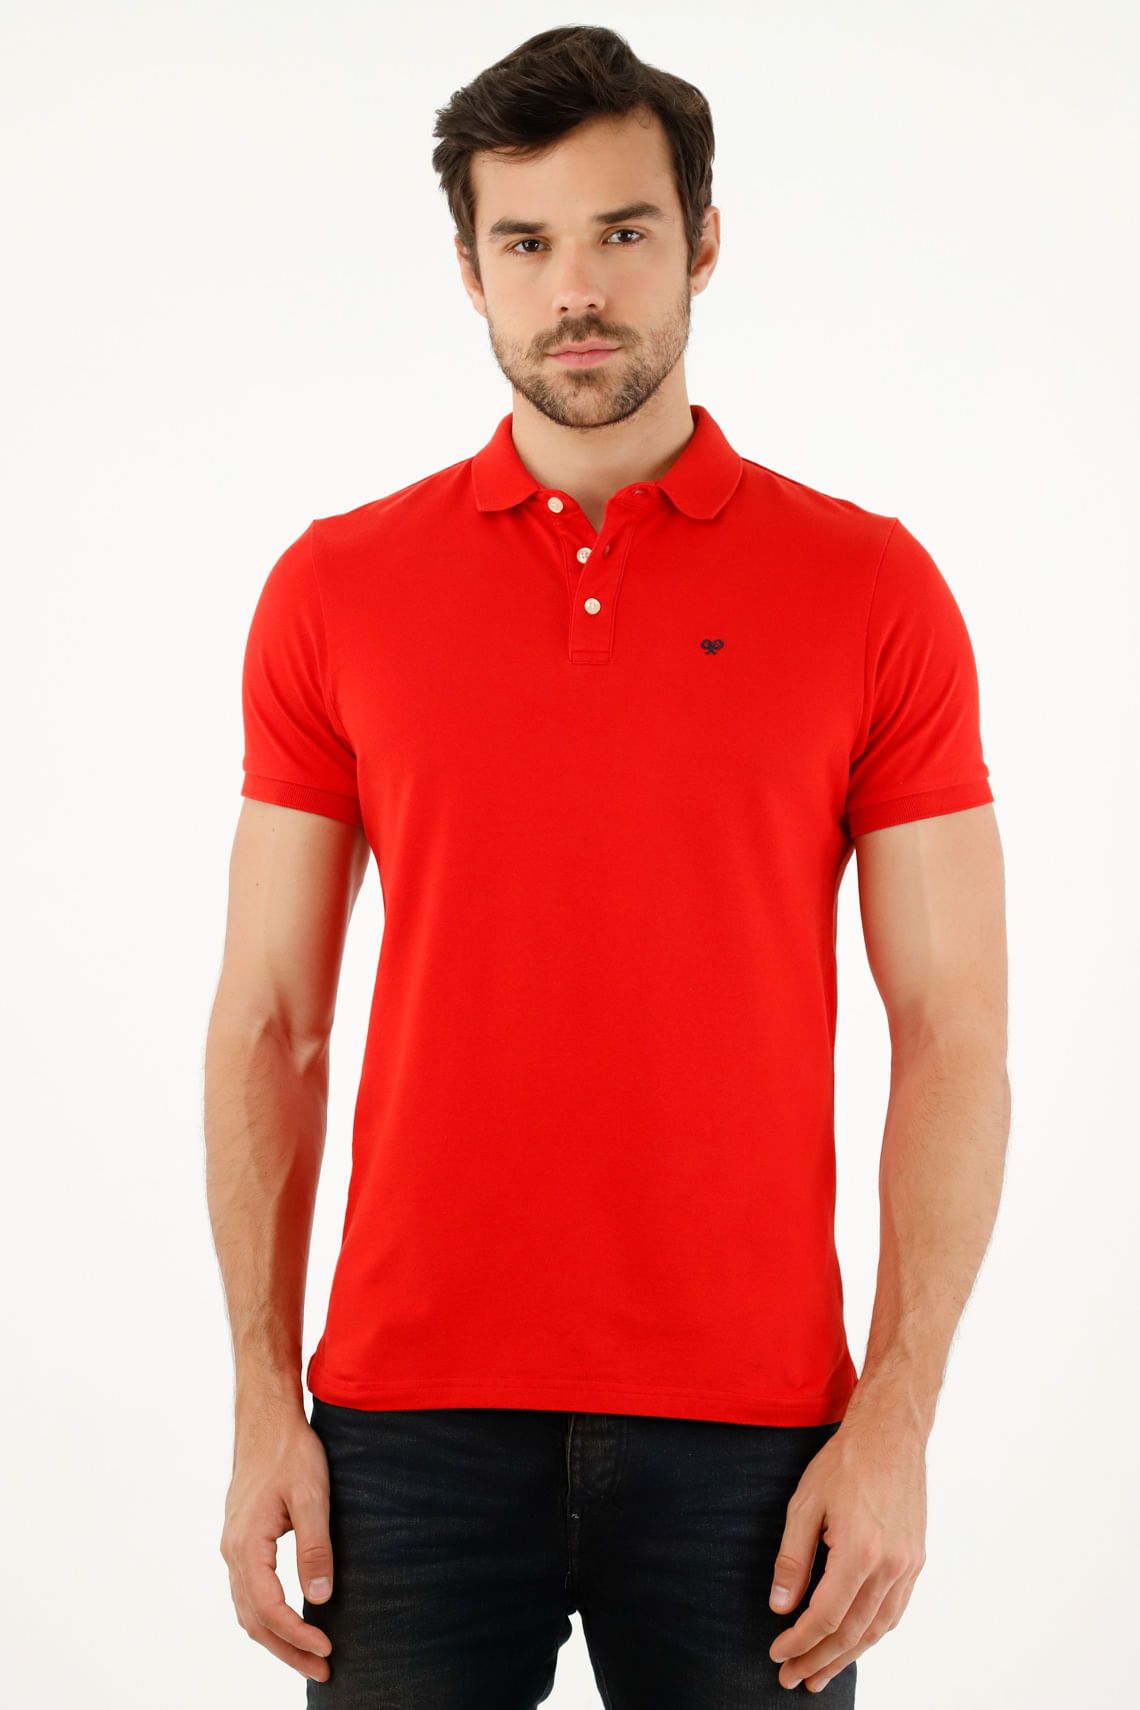  Camisas de tenis personalizadas para hombres, camisa polo para  hombre, camiseta polo de tenis con patrón de bolas de tenis, con emblema de  corona, camisa de tenis unisex, regalos de tenis